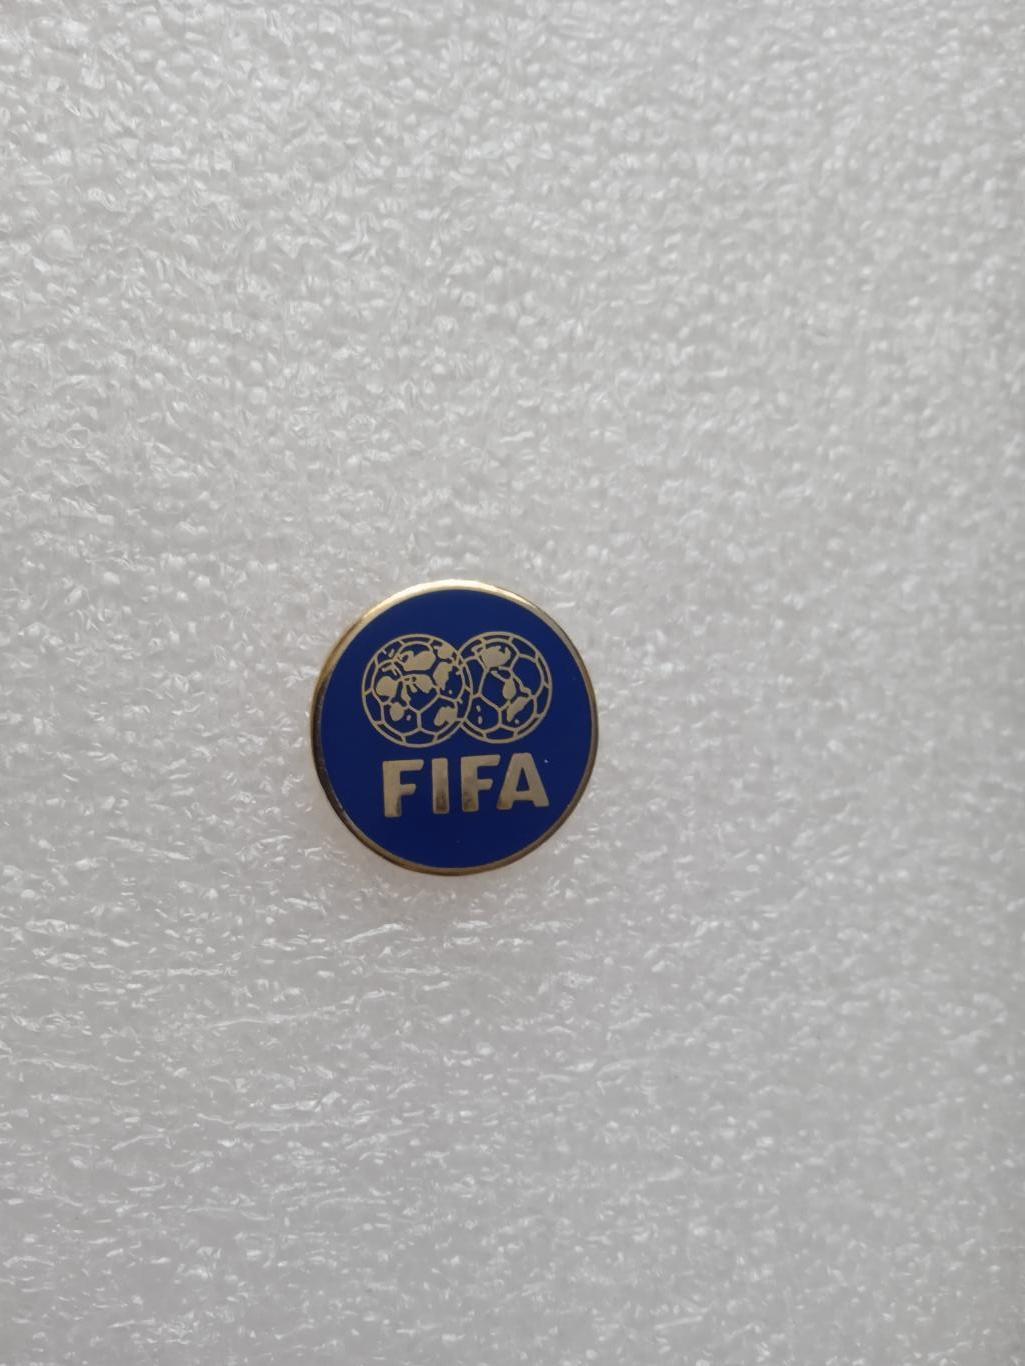 ФИФА-1977,федерация футбола..